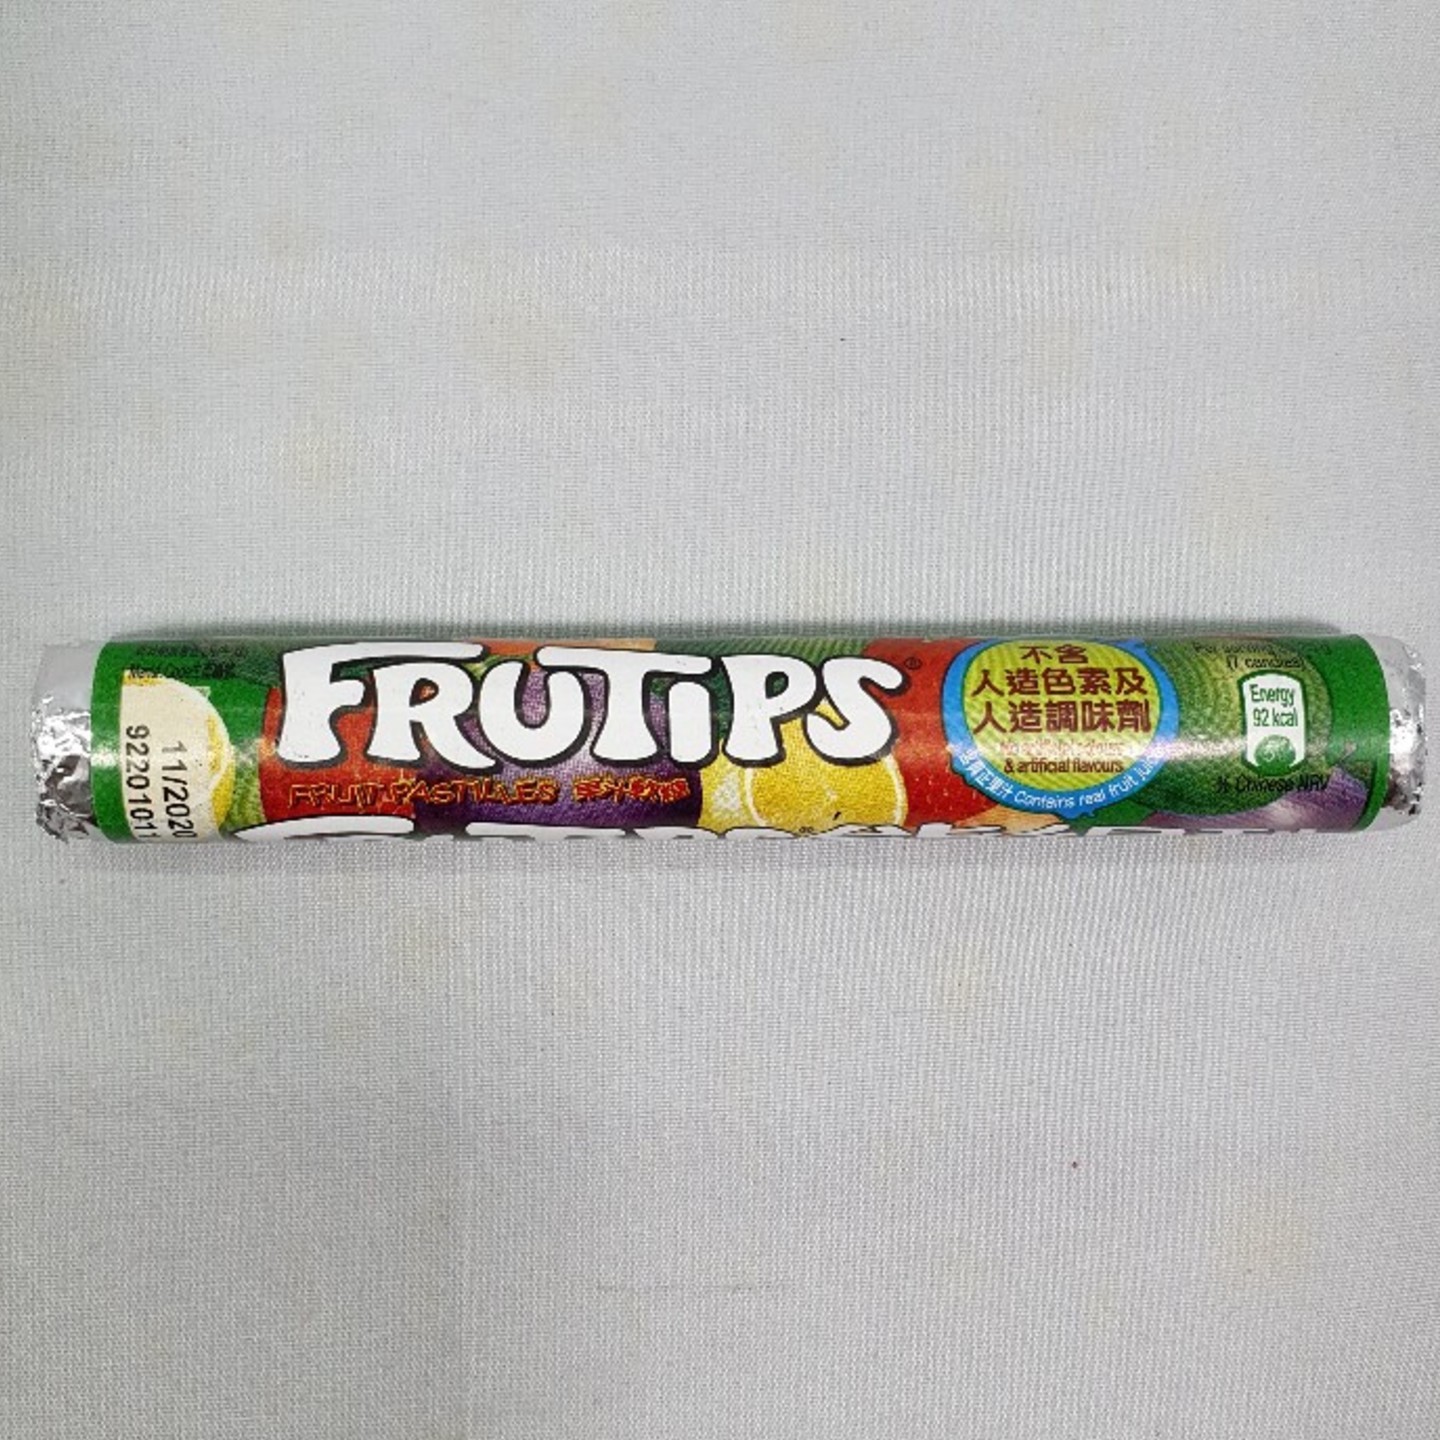 Fruitips (Mixed)